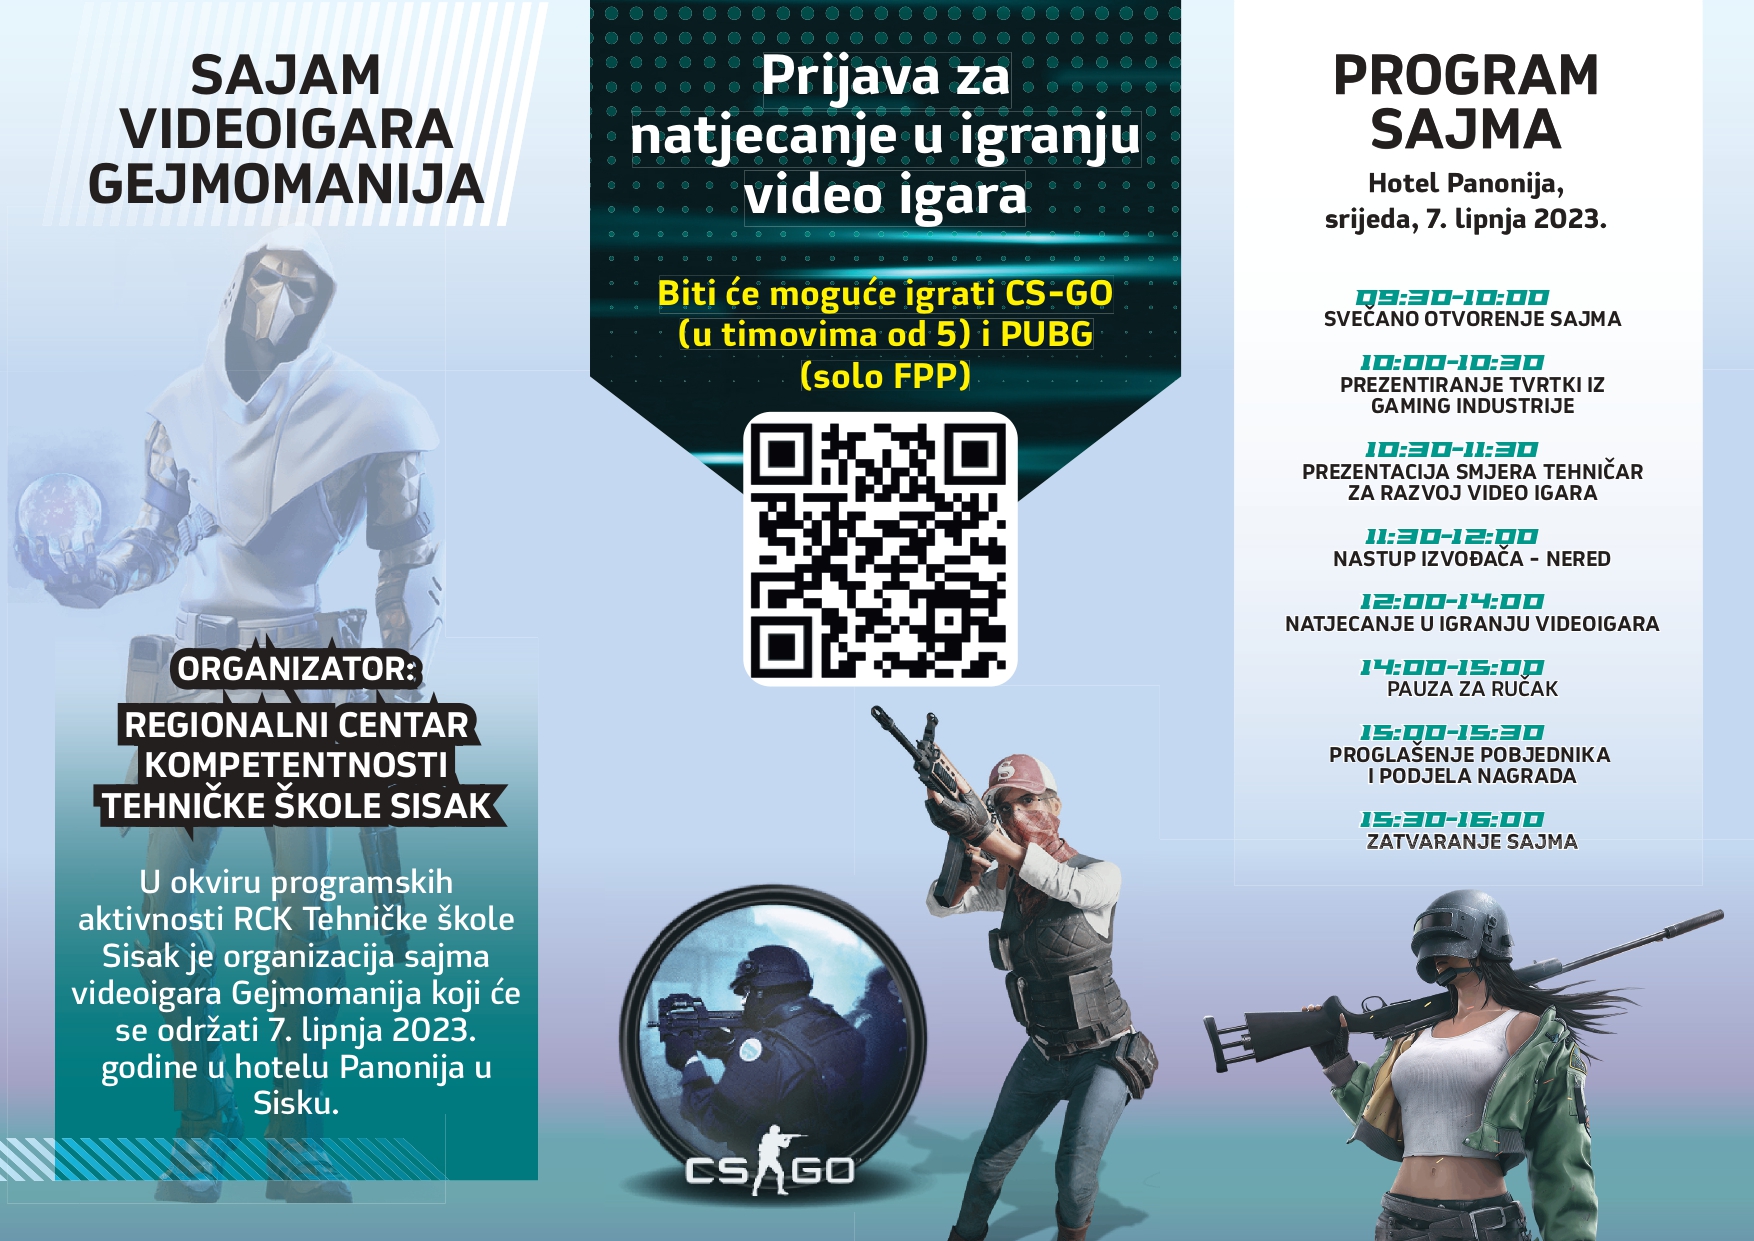 Regionalni centar kompetentnosti Tehničke škole Sisak organizira Gejmomaniju – sajam videoigara koji će se održati u hotelu Panonija u Sisku, u srijedu, 7. lipnja. 